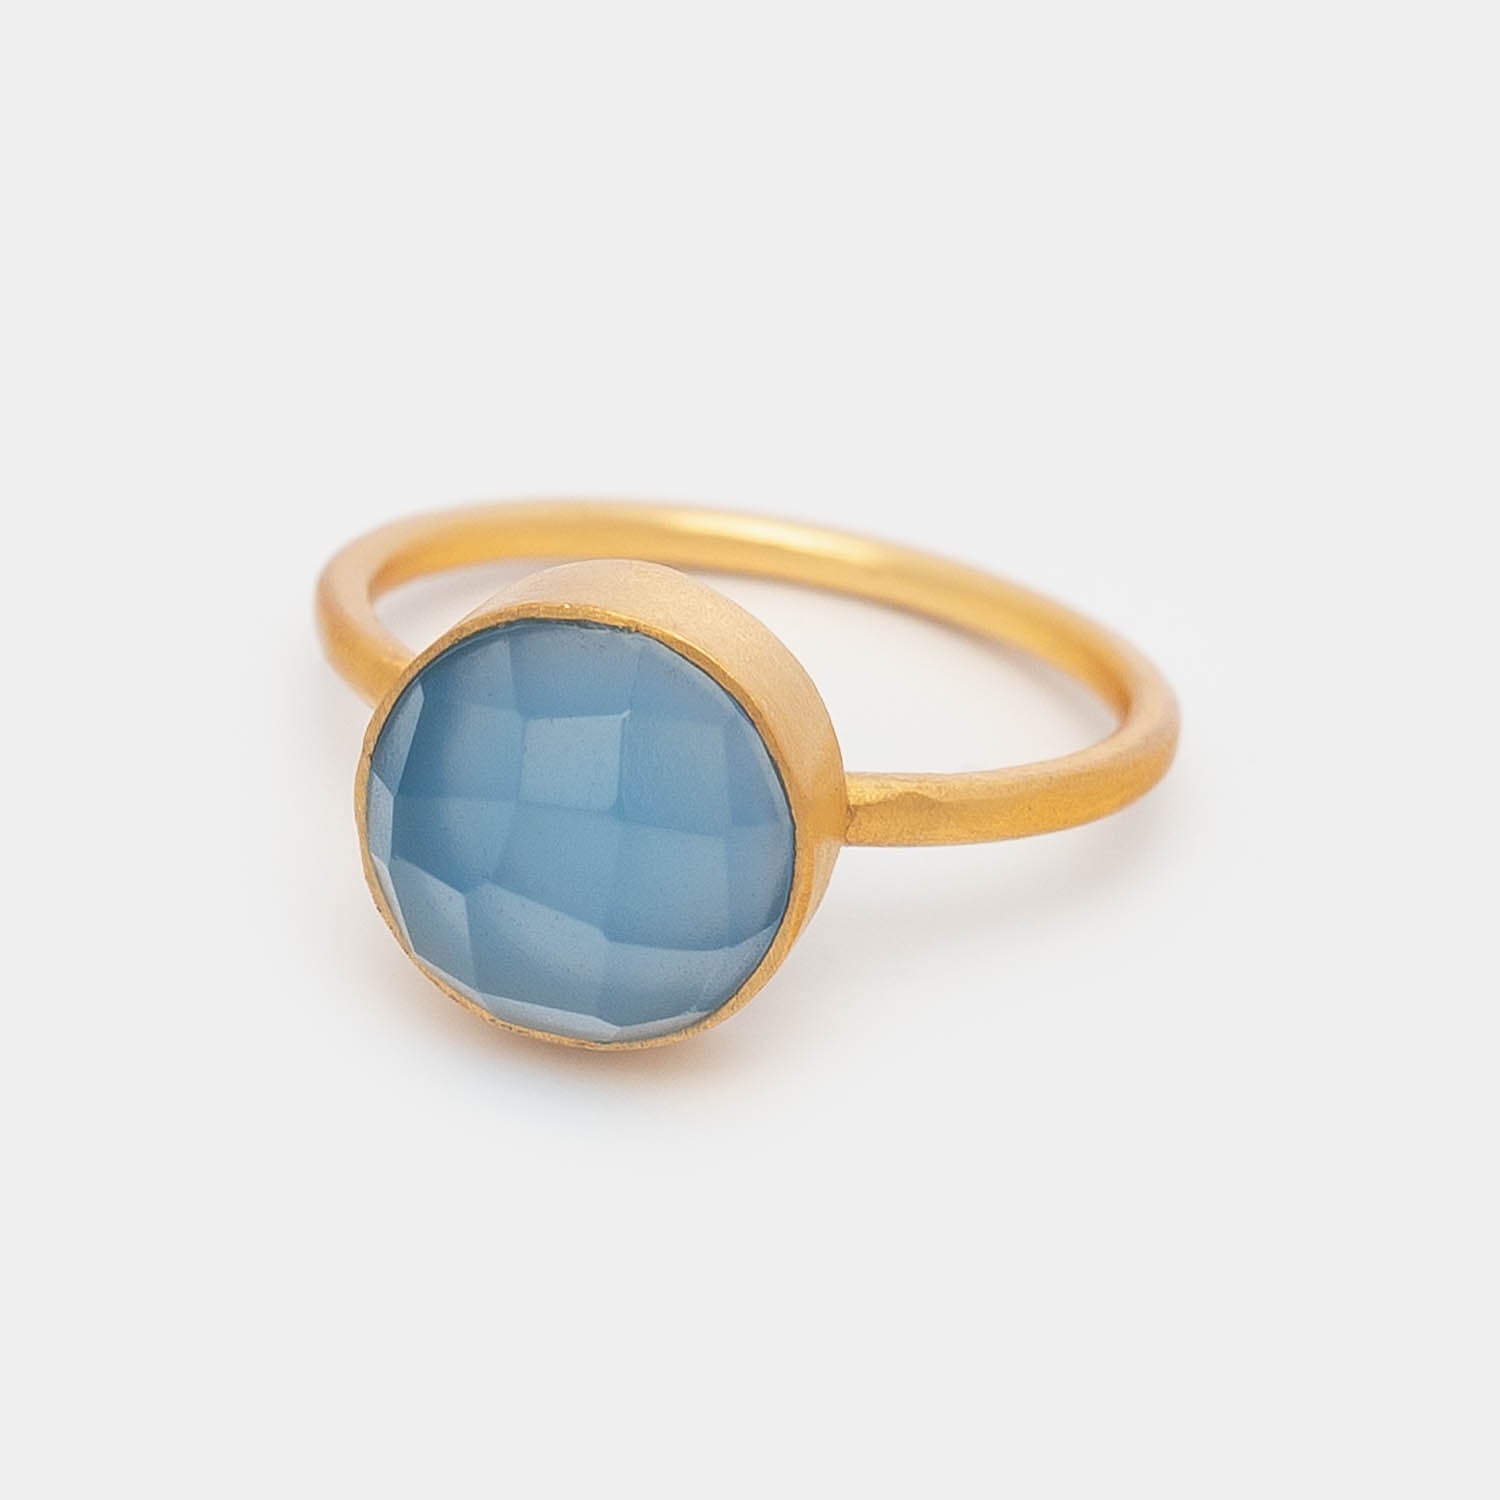 Ring Eloise Light Blue Chalcedony - Fleurs des Prés Jewelry